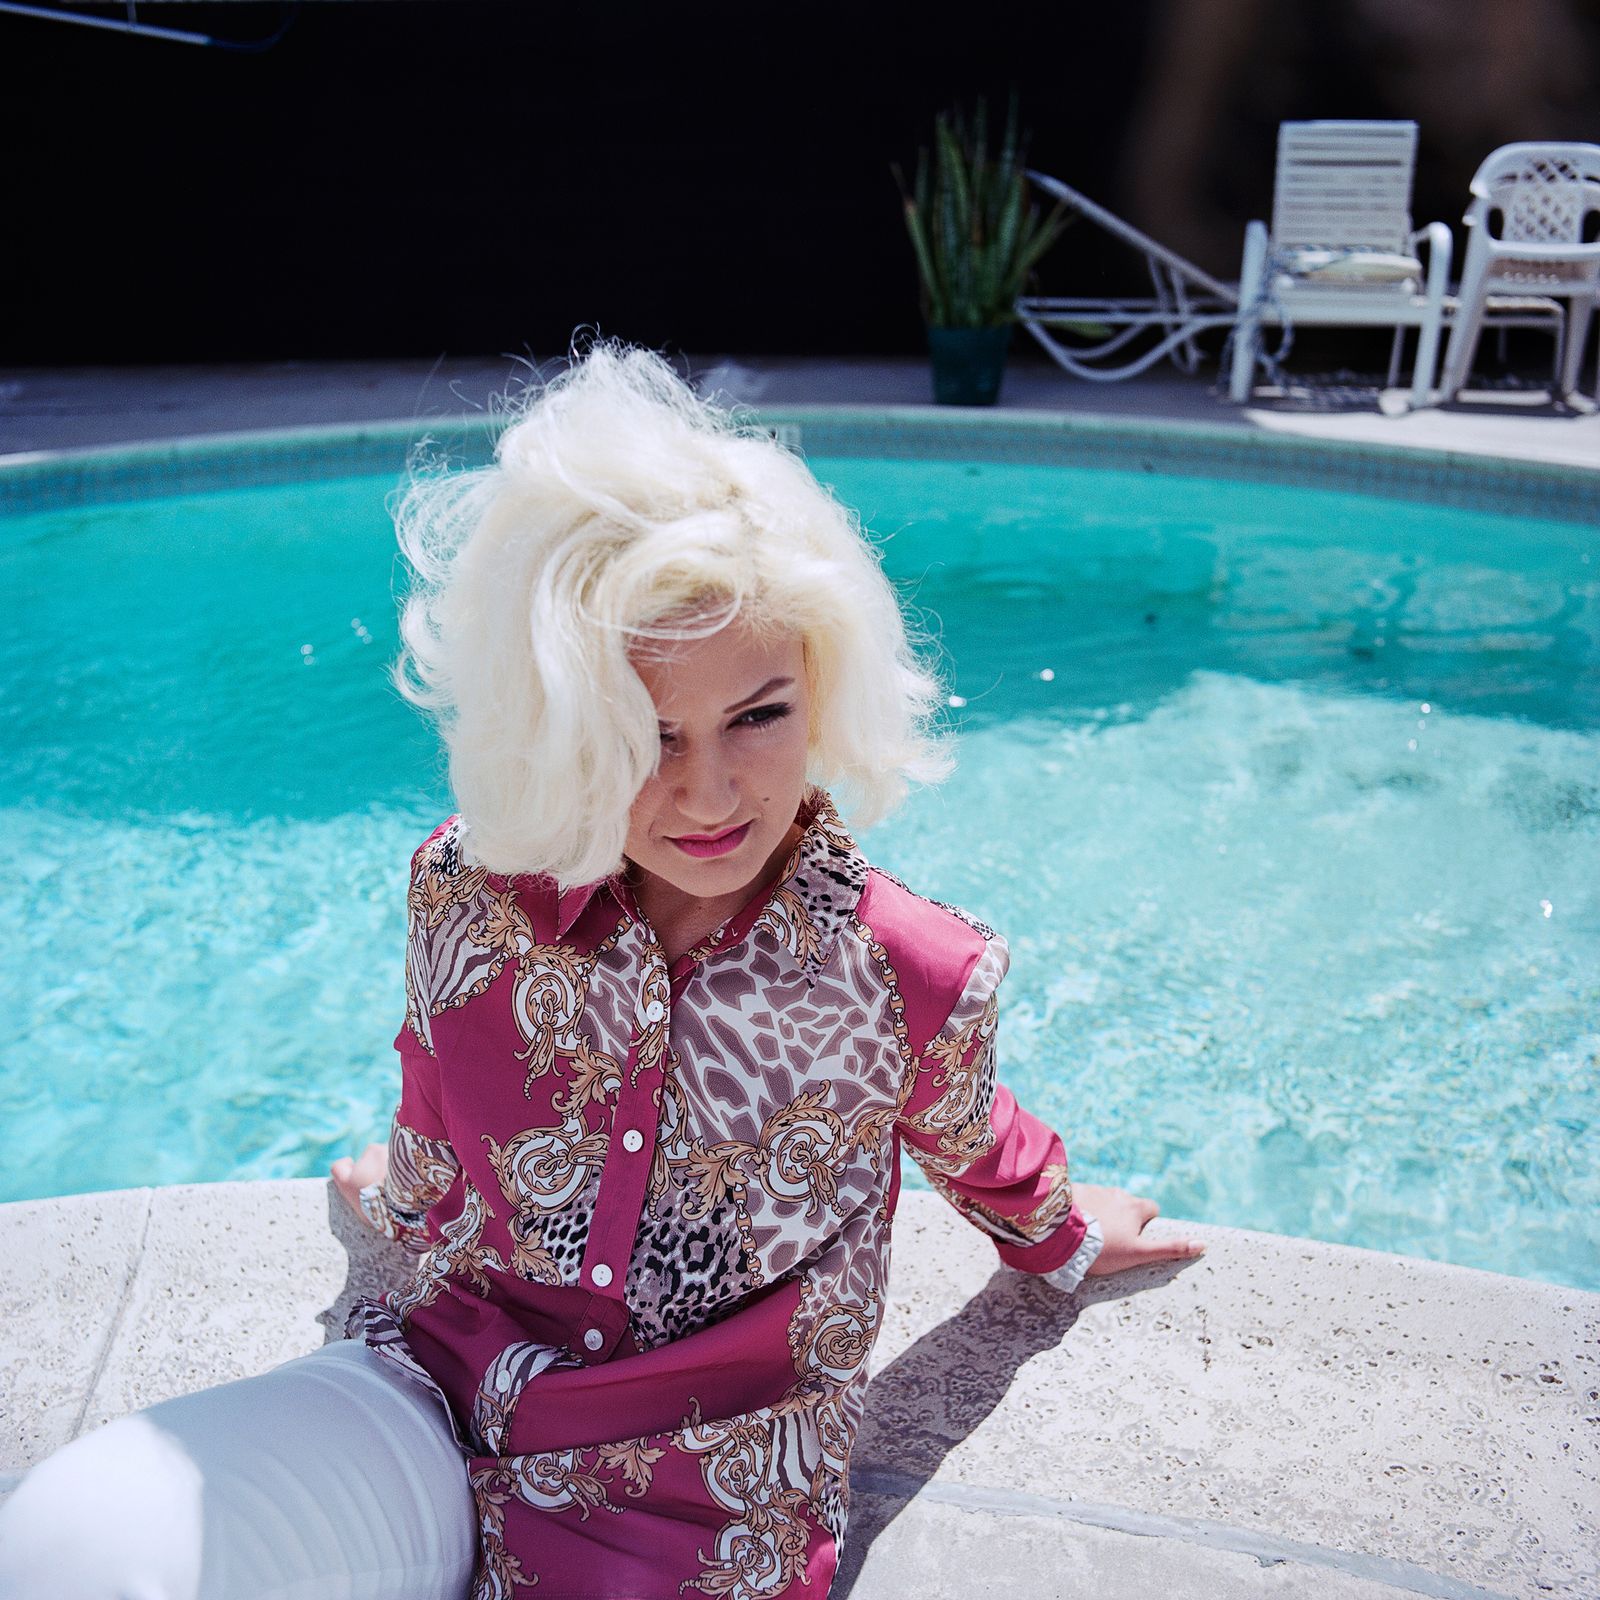 © Emily Berl - Monica as Marilyn Monroe, Los Angeles, CA, 2013.